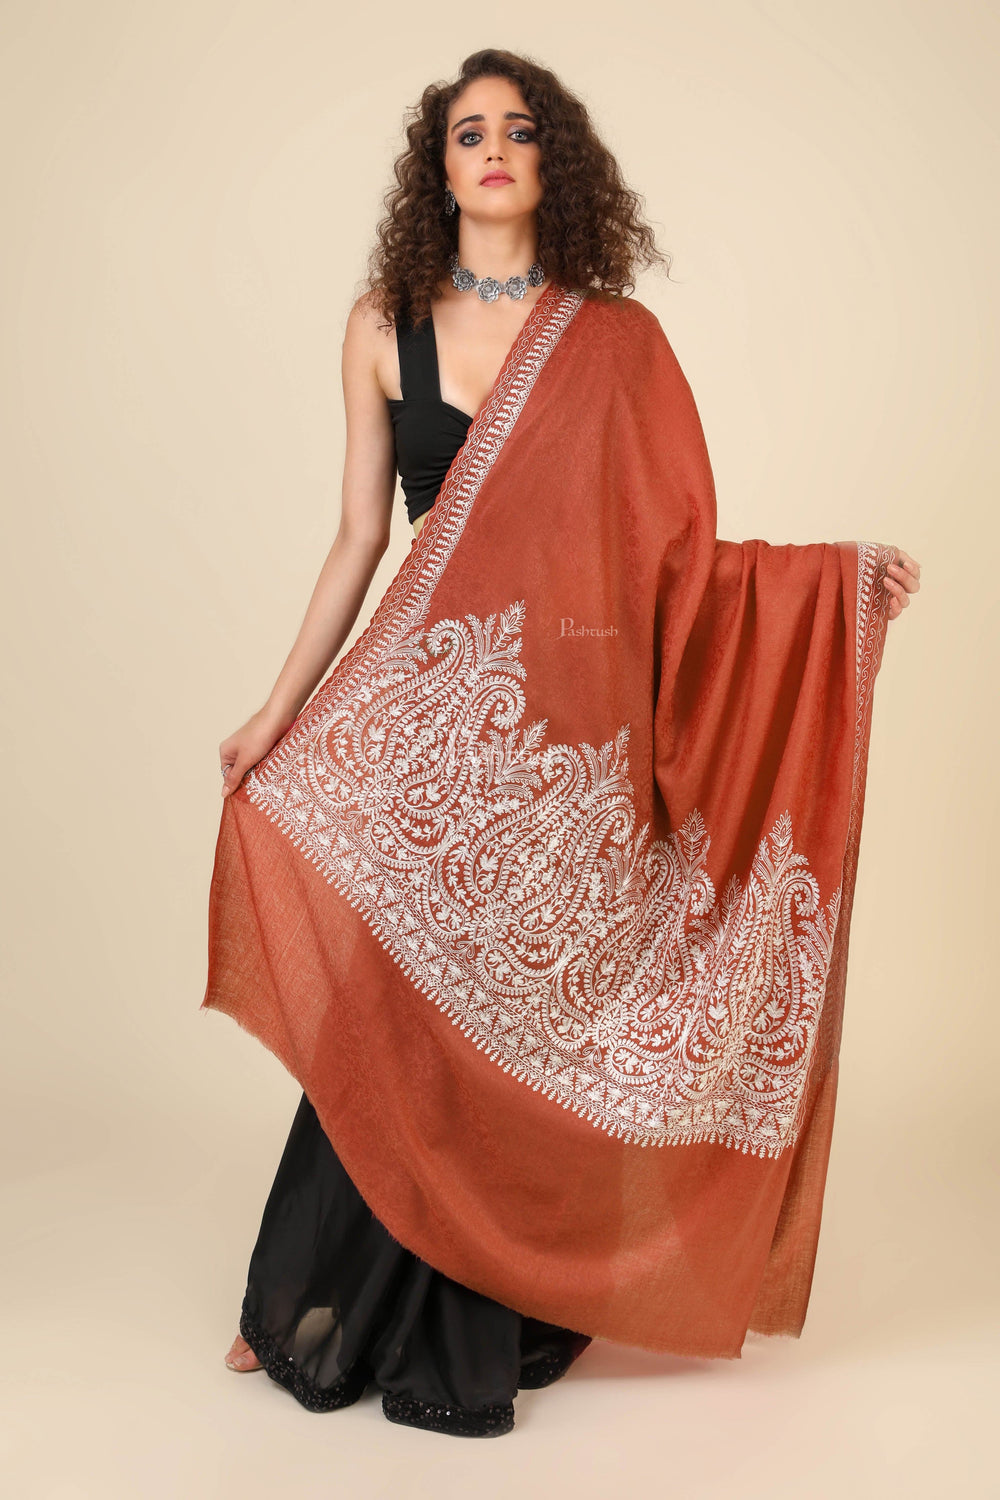 Pashtush India Womens Shawls Pashtush Womens Fine Wool Shawl, With Tone On Tone Nalki Embroidery, Soft And Warm, Orange